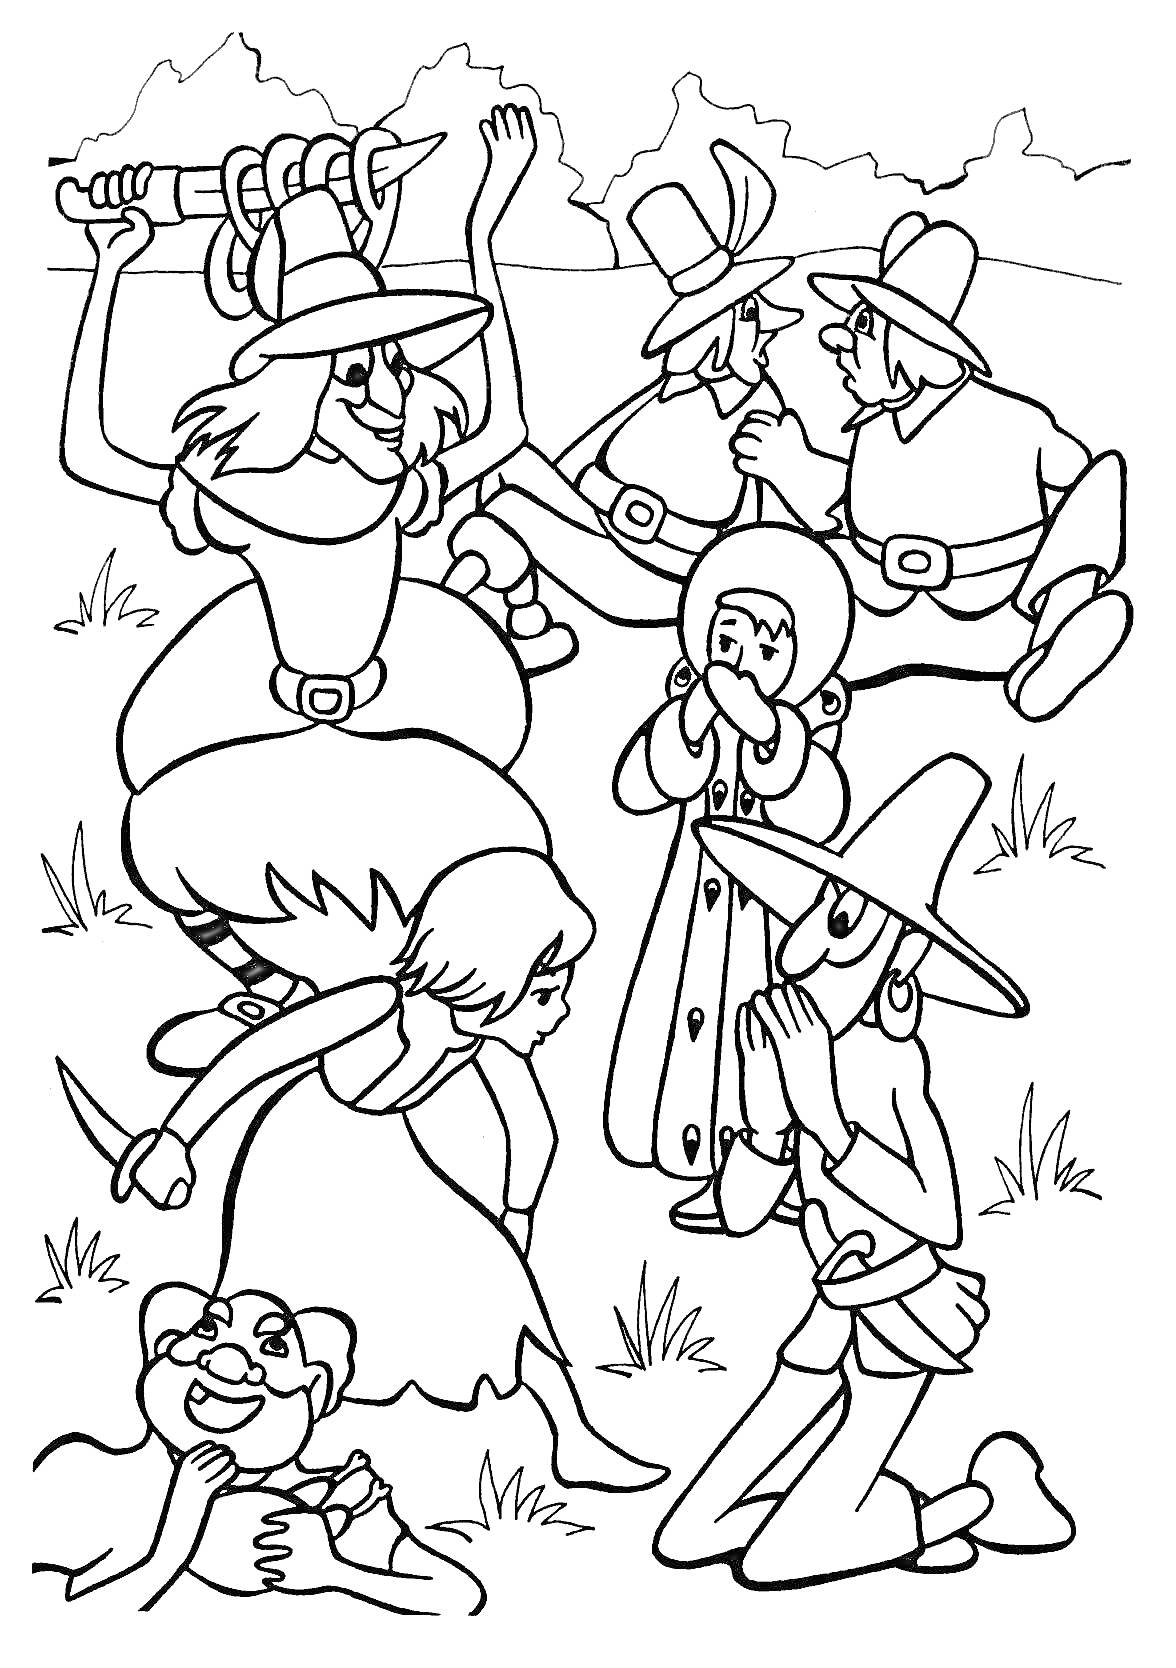 Раскраска Группа людей в костюмах сражается со шпагами на лугу, мужчина с пистолетами, шляпы с перьями